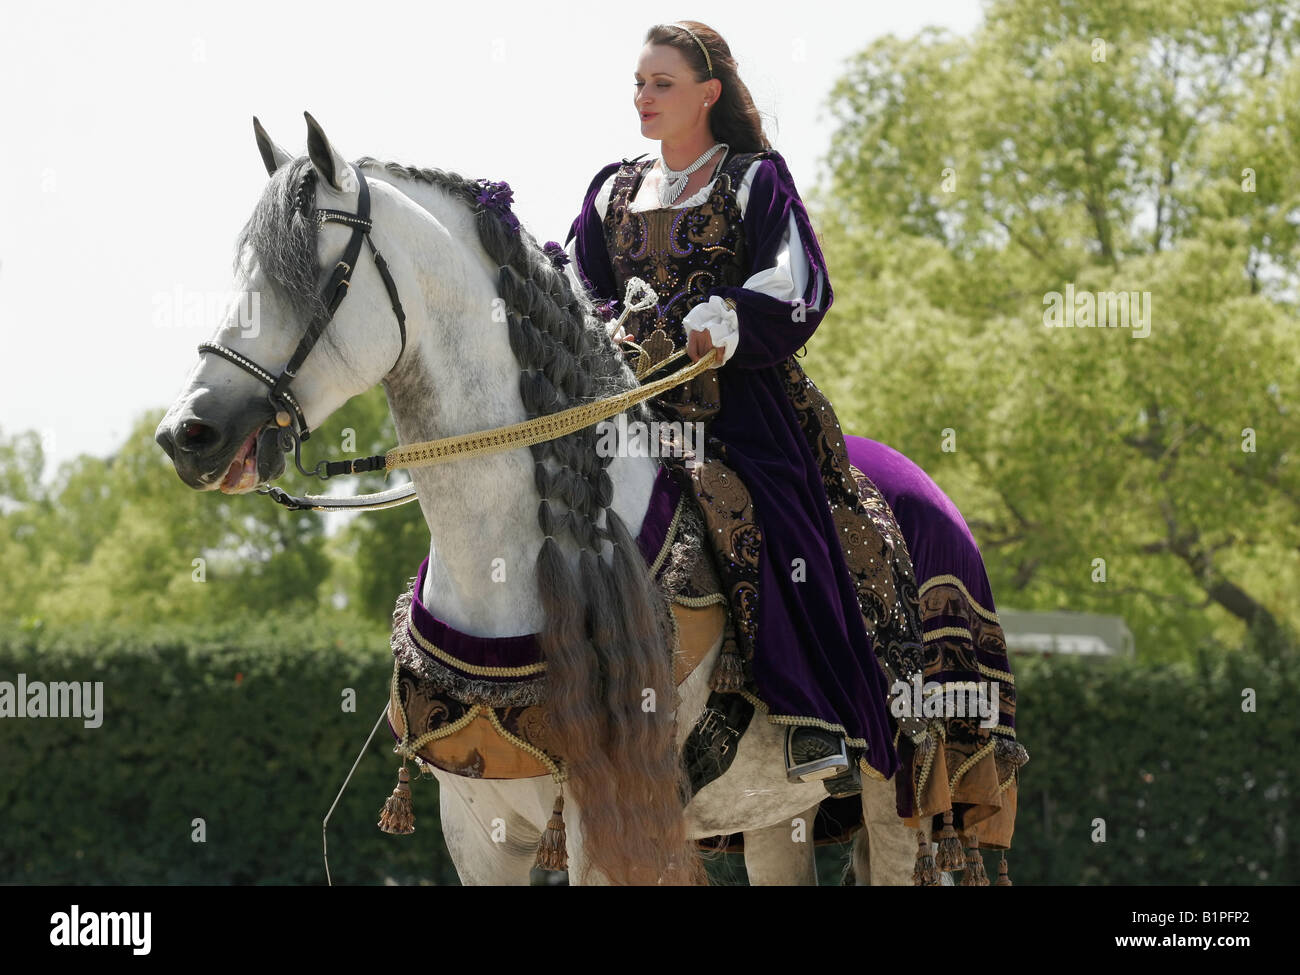 Junge Dame und ihr Pferd in einem mittelalterlichen Kostüm gekleidet  Stockfotografie - Alamy